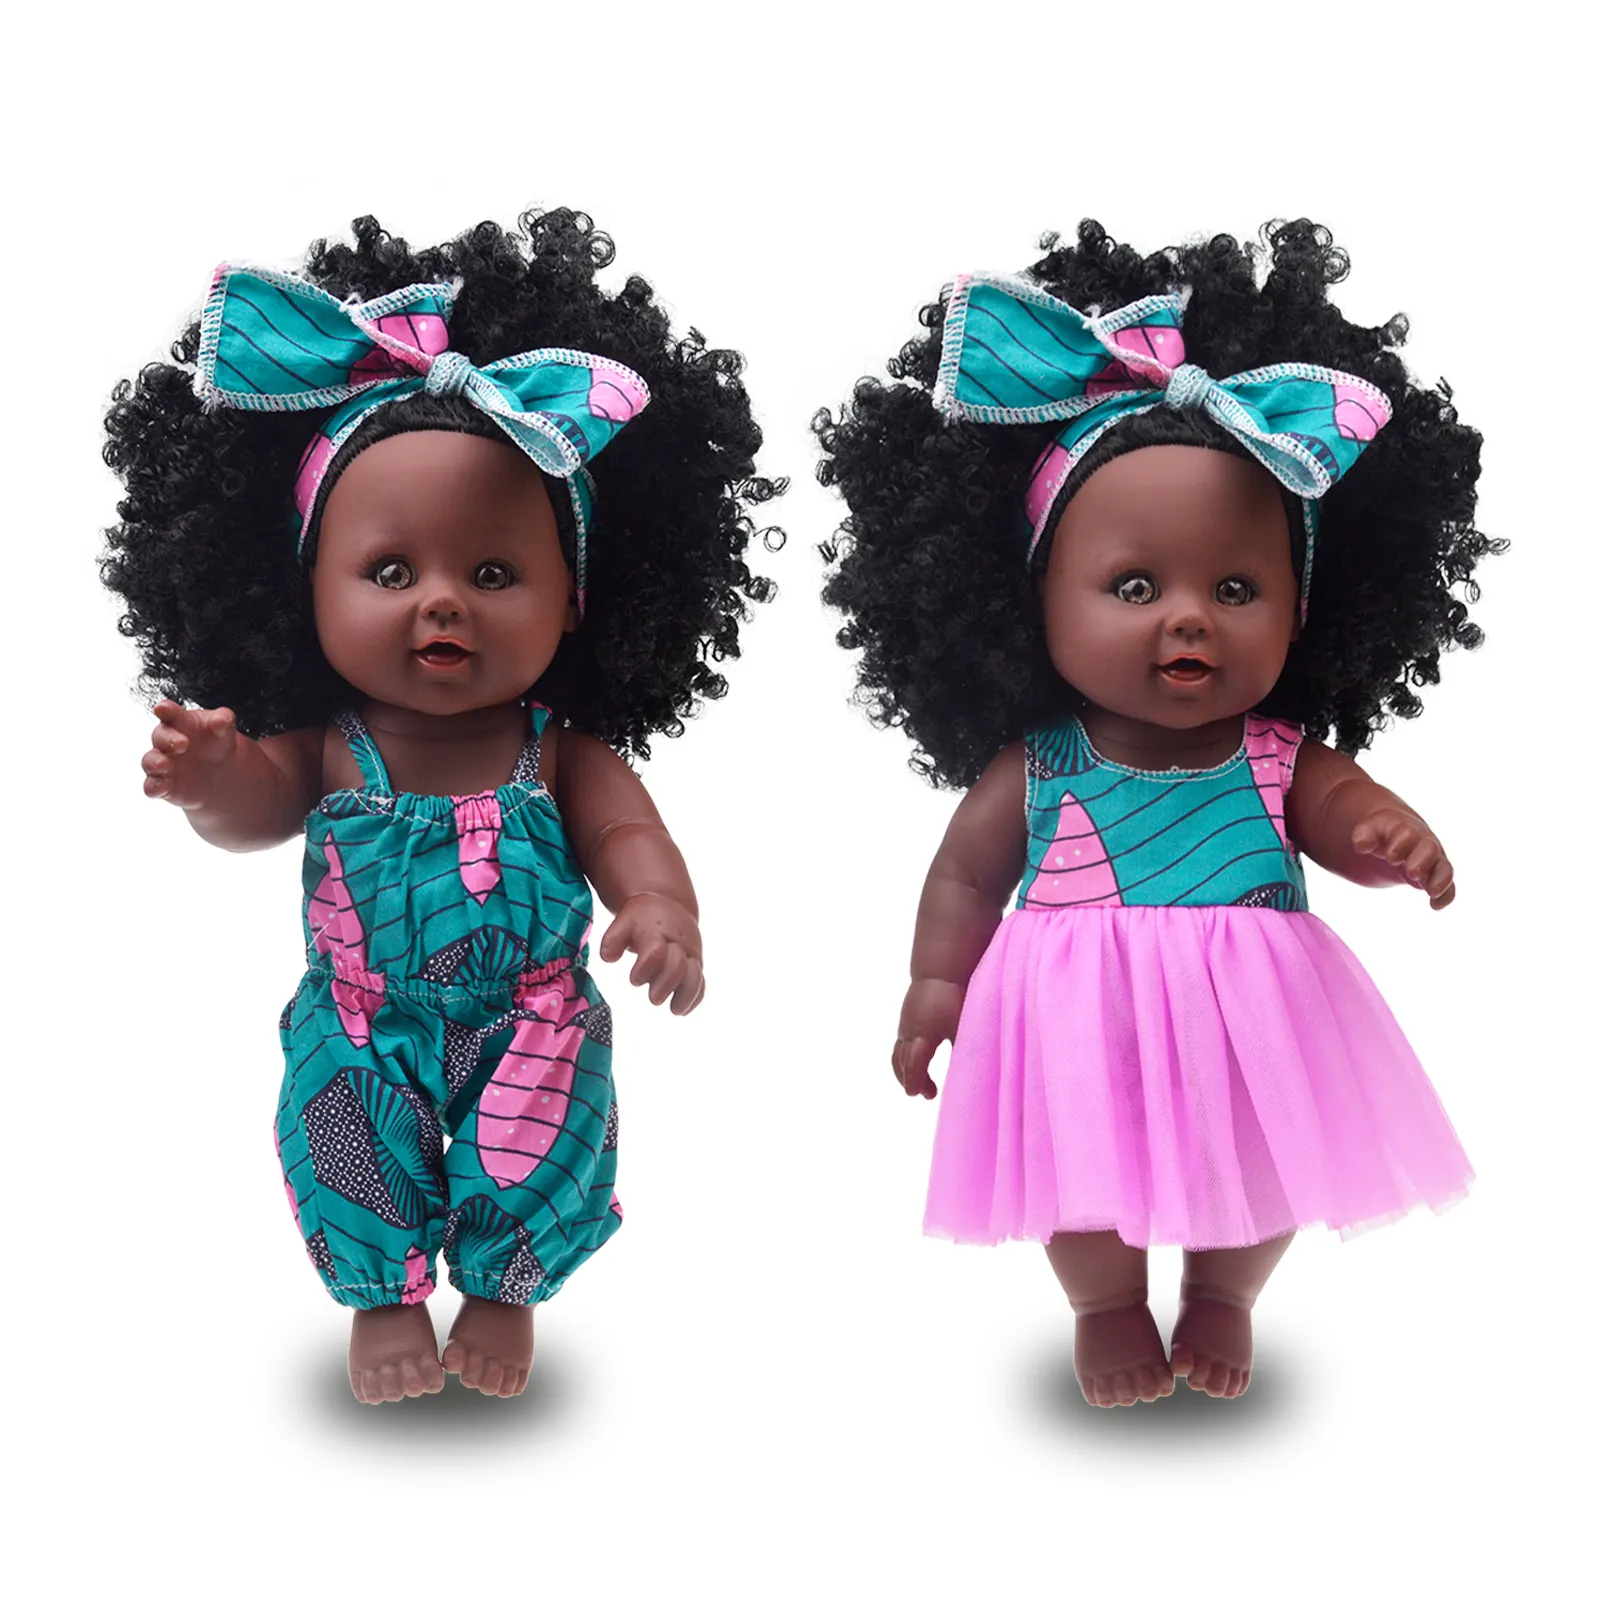 2022 горячей продажи подарков популярно на 12 дюймовая виниловая в африканском стиле в американском стиле для девочек, черные куклы вьющиеся волосы для детей